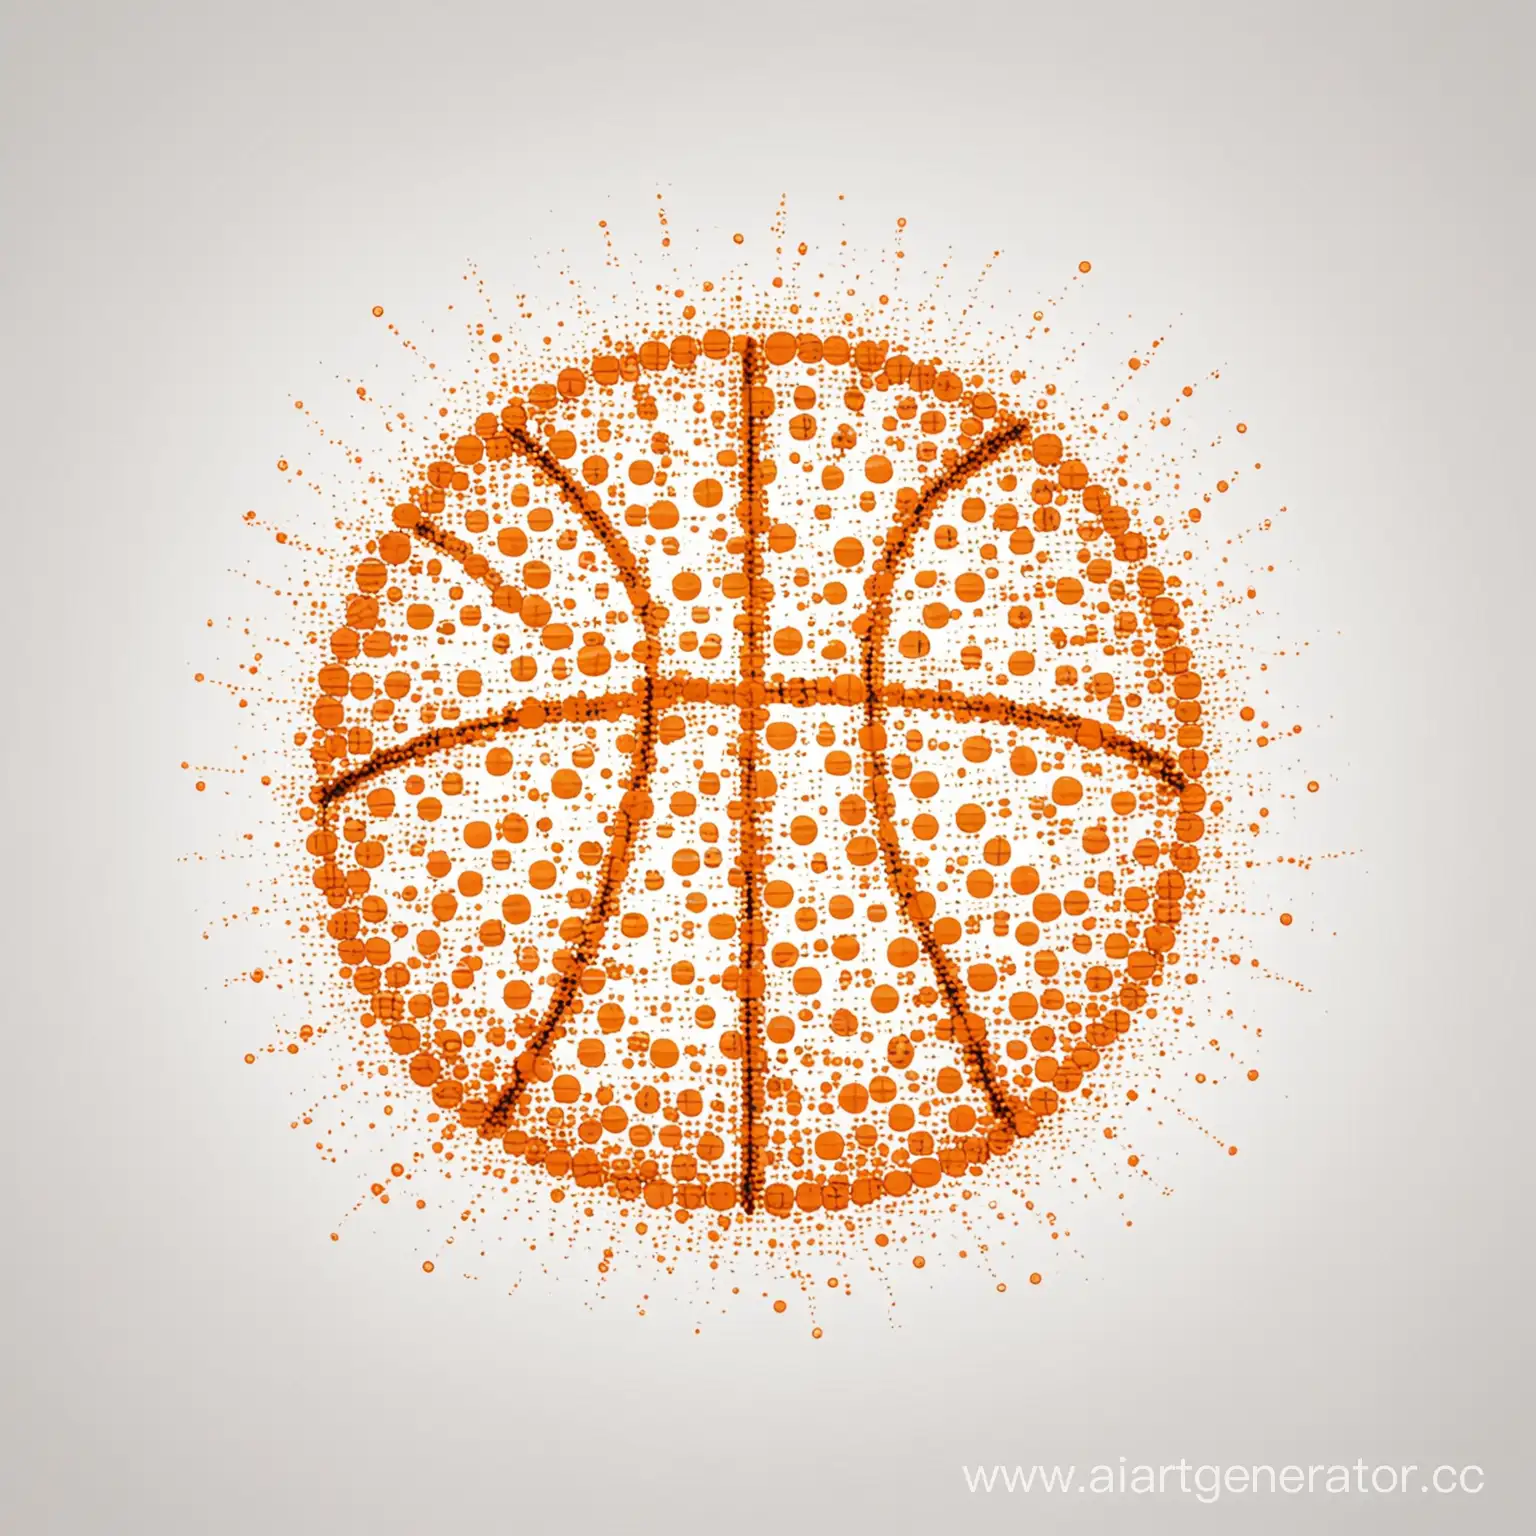 баскетбольный мяч нарисованный из точек оранжевого цвета на белом фоне